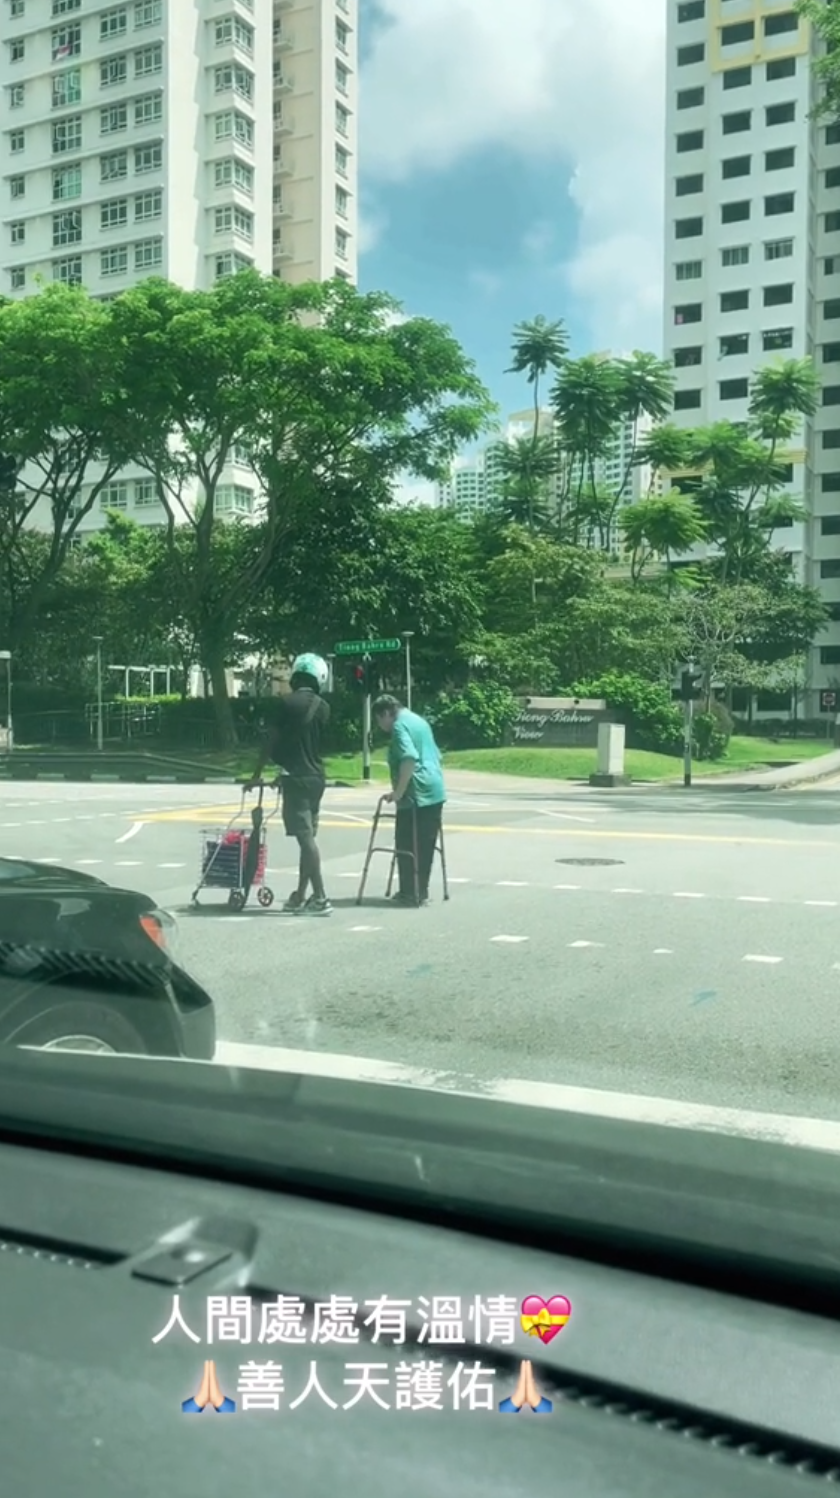 helps elderly cross roads